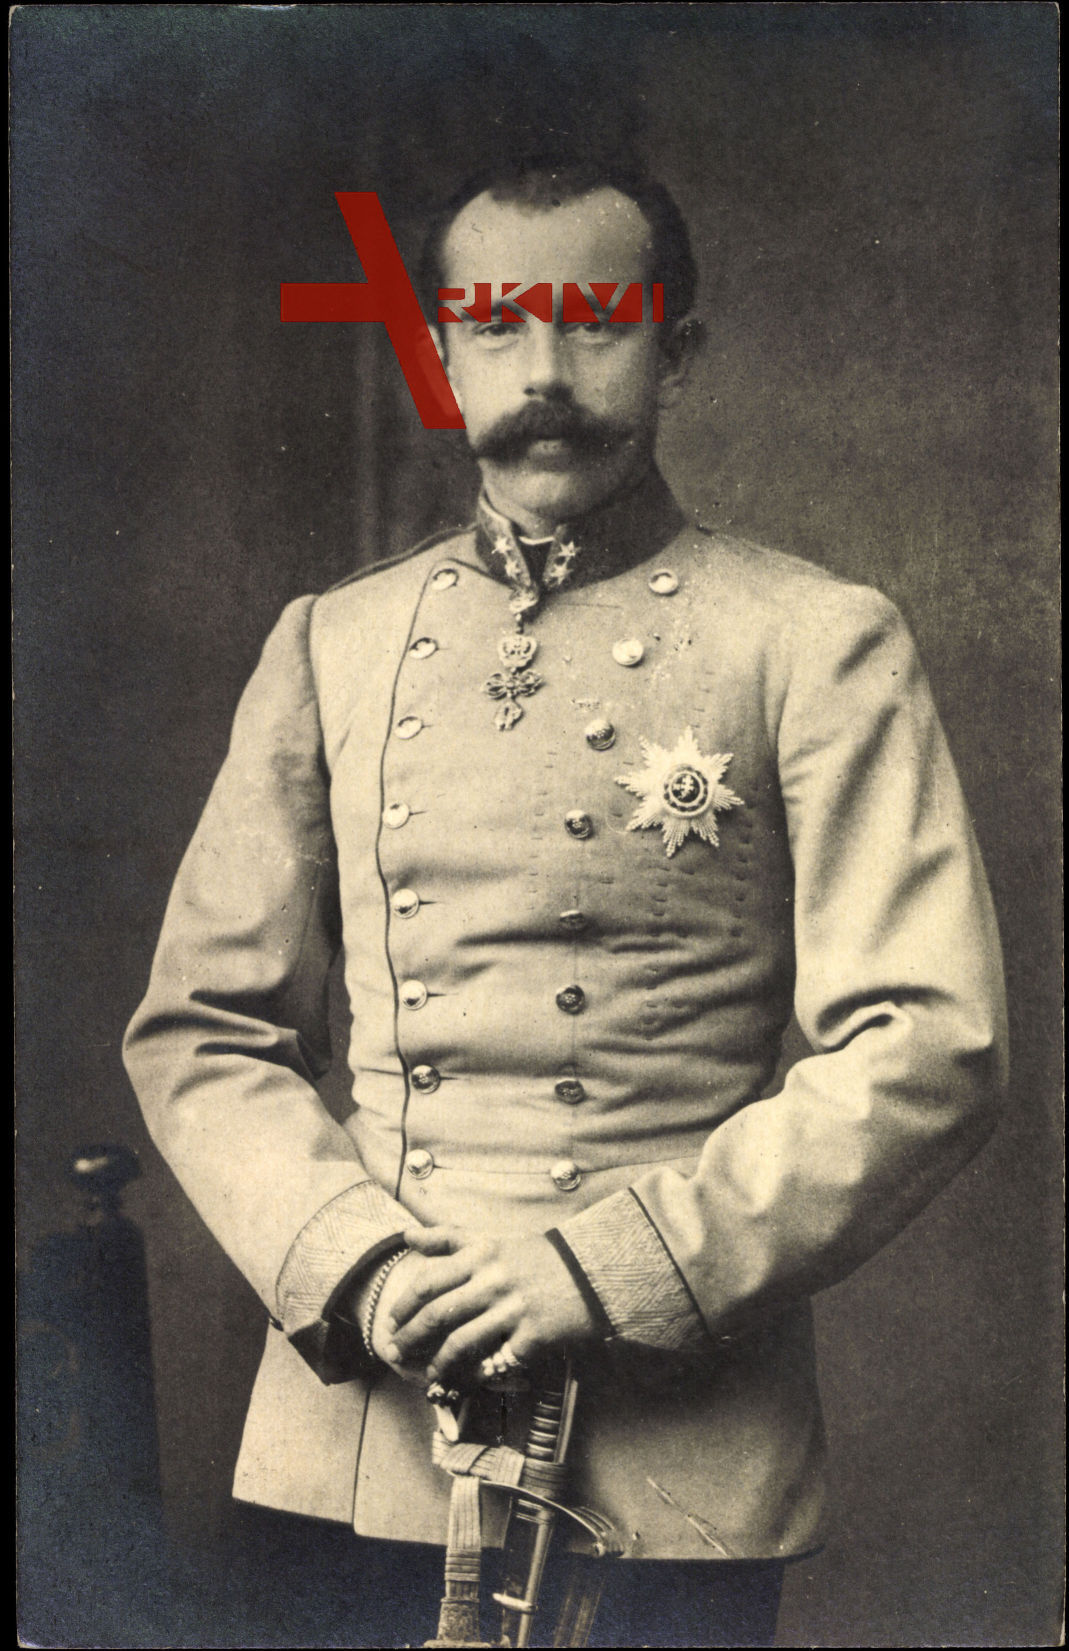 Kronprinz Rudolph von Österreich Ungarn, Uniform, Säbel, Bruststern